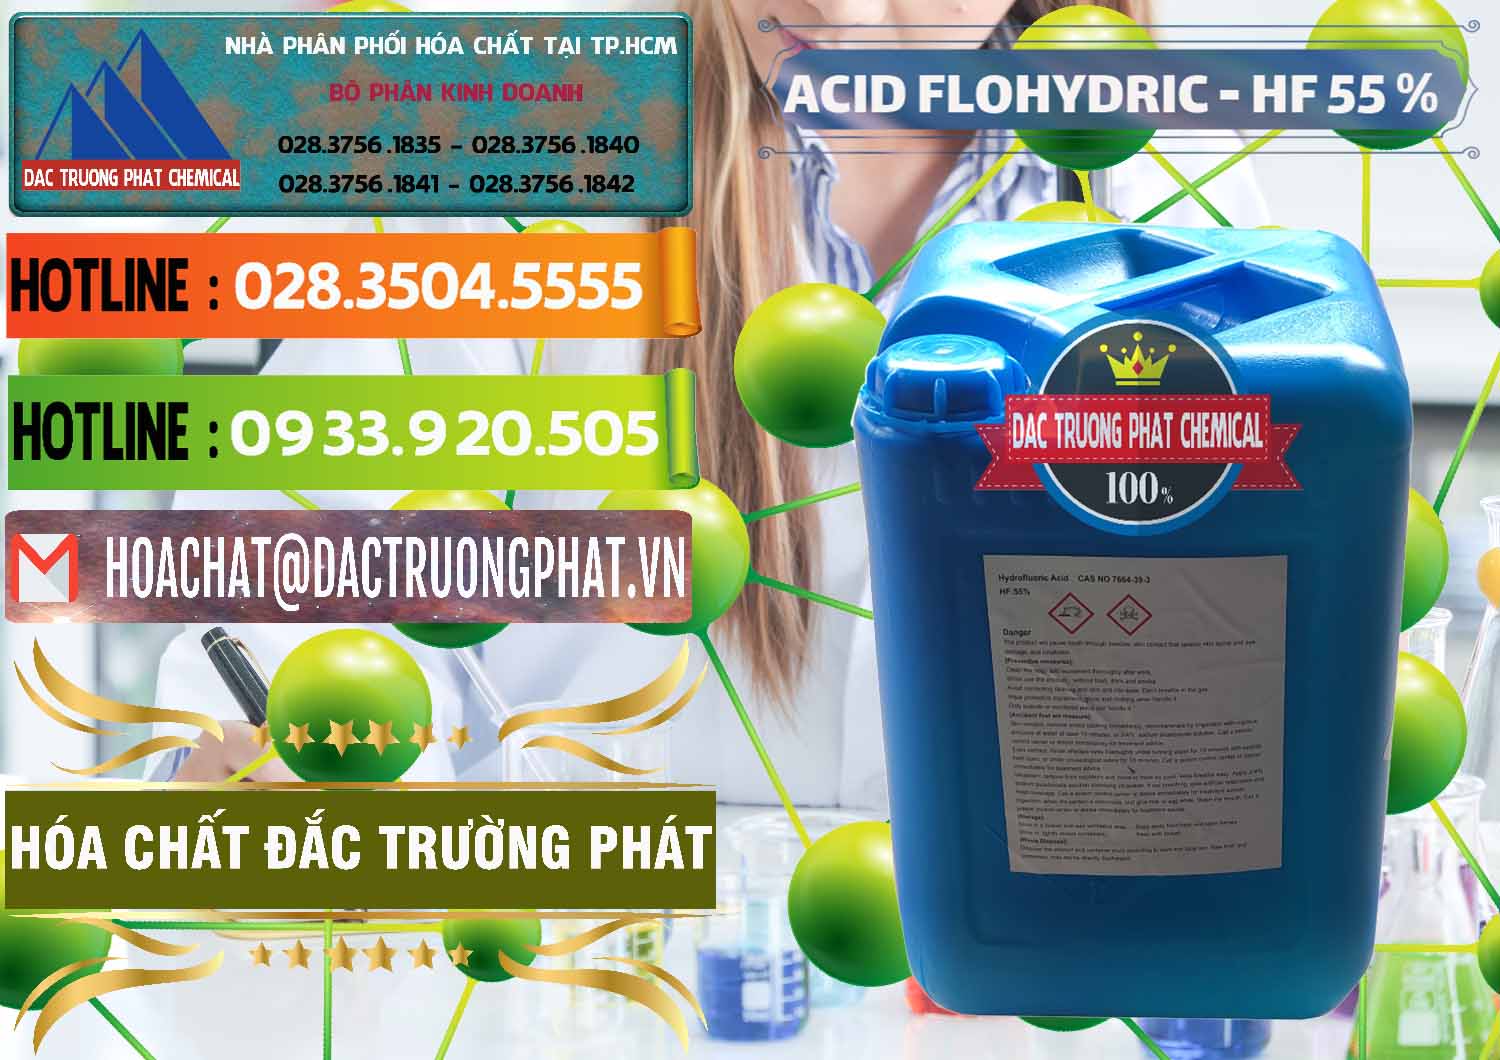 Công ty chuyên bán ( cung cấp ) Axit HF - Acid HF 55% Can Xanh Trung Quốc China - 0080 - Cty cung cấp & bán hóa chất tại TP.HCM - cungcaphoachat.com.vn